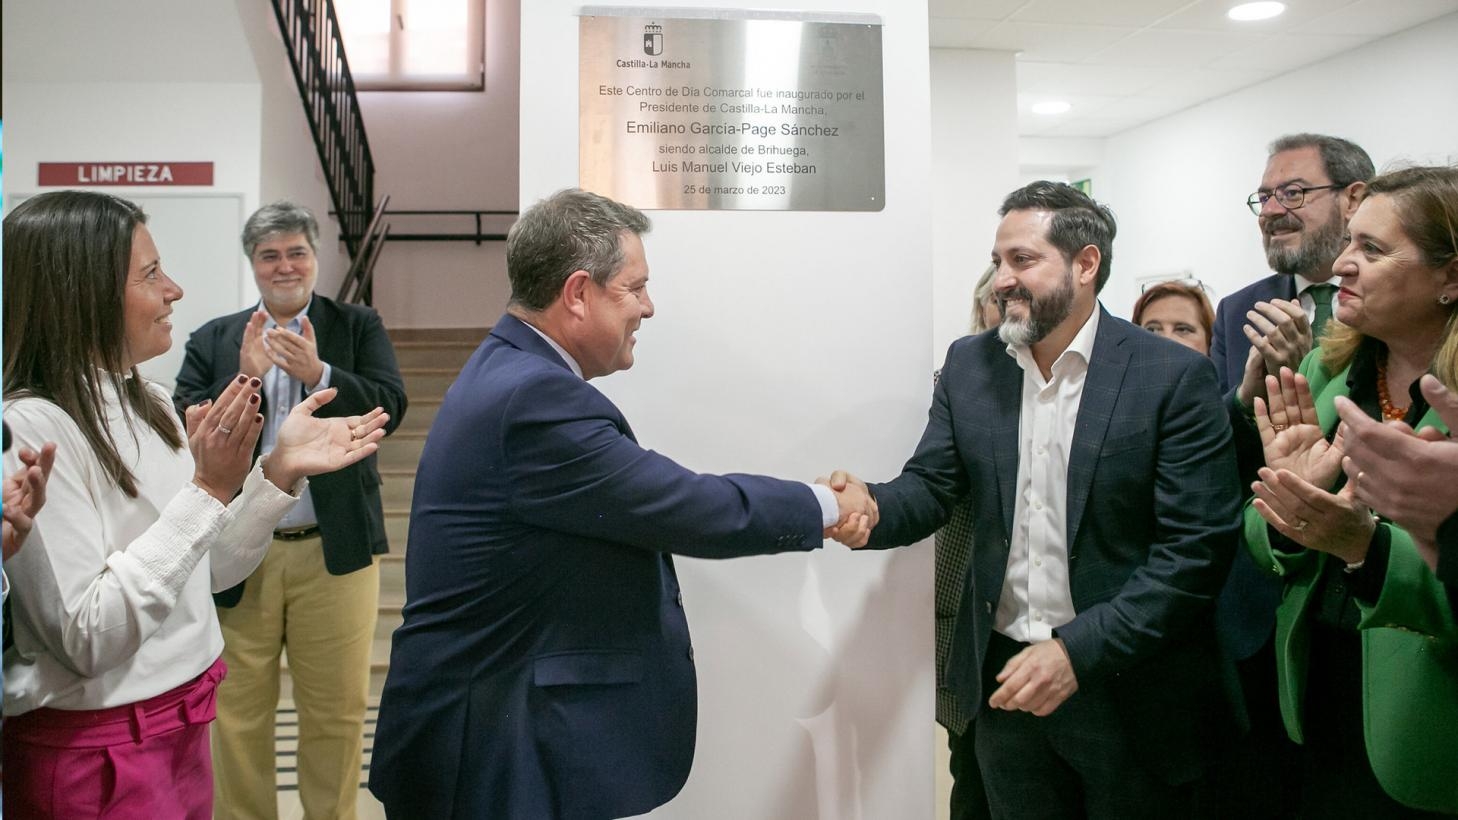 El presidente de Castilla-La Mancha, Emiliano García-Page, ha inaugurado el Centro de Día Comarcal de Brihuega en el que el Gobierno regional ha invertido 30.000 euros para el equipamiento de este recurso.